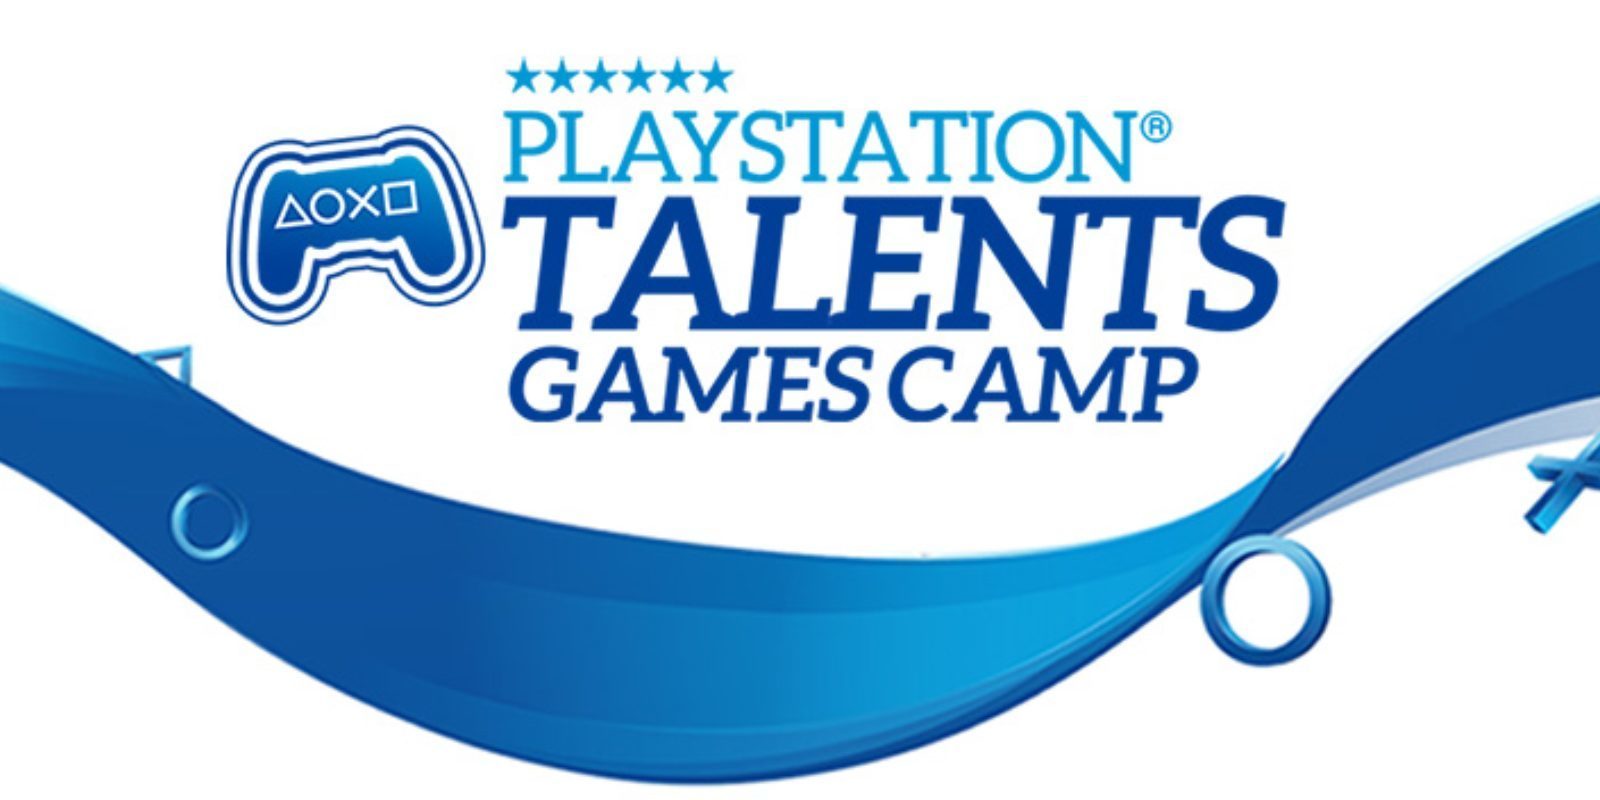 Estos son los estudios que estarán en PlayStation Talents Games Camp 2018